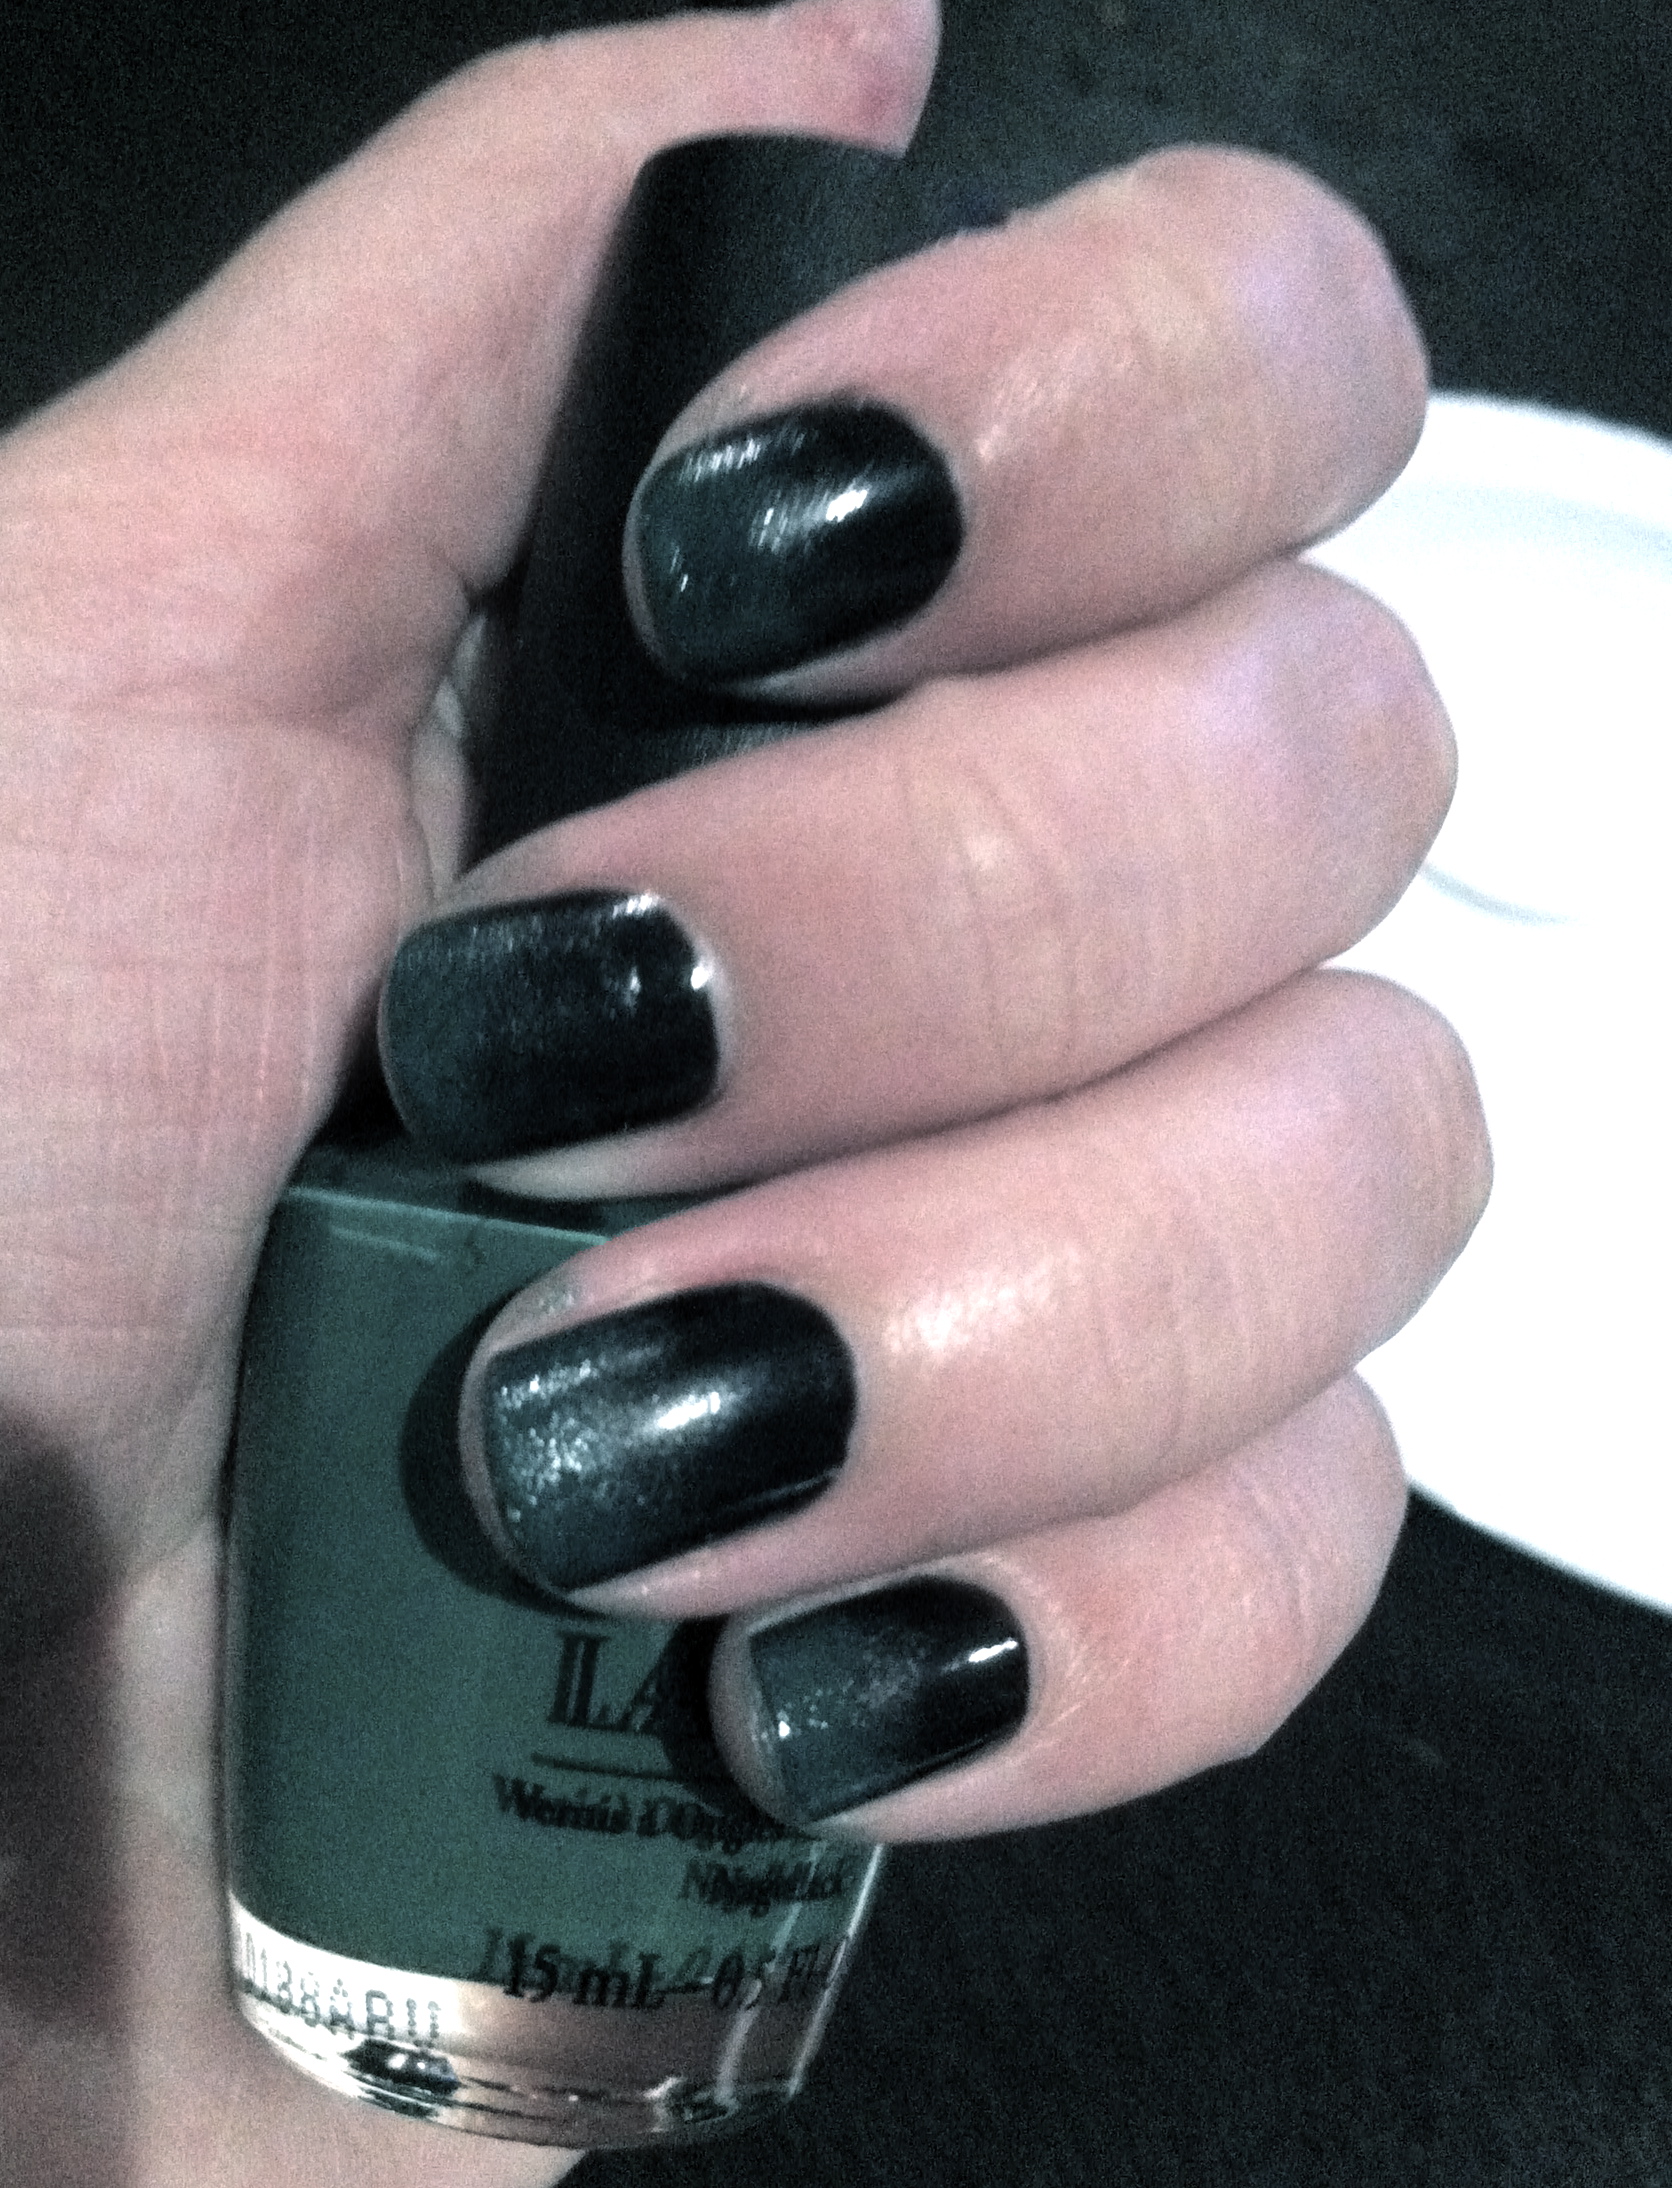 viola! black/green ombre nails!